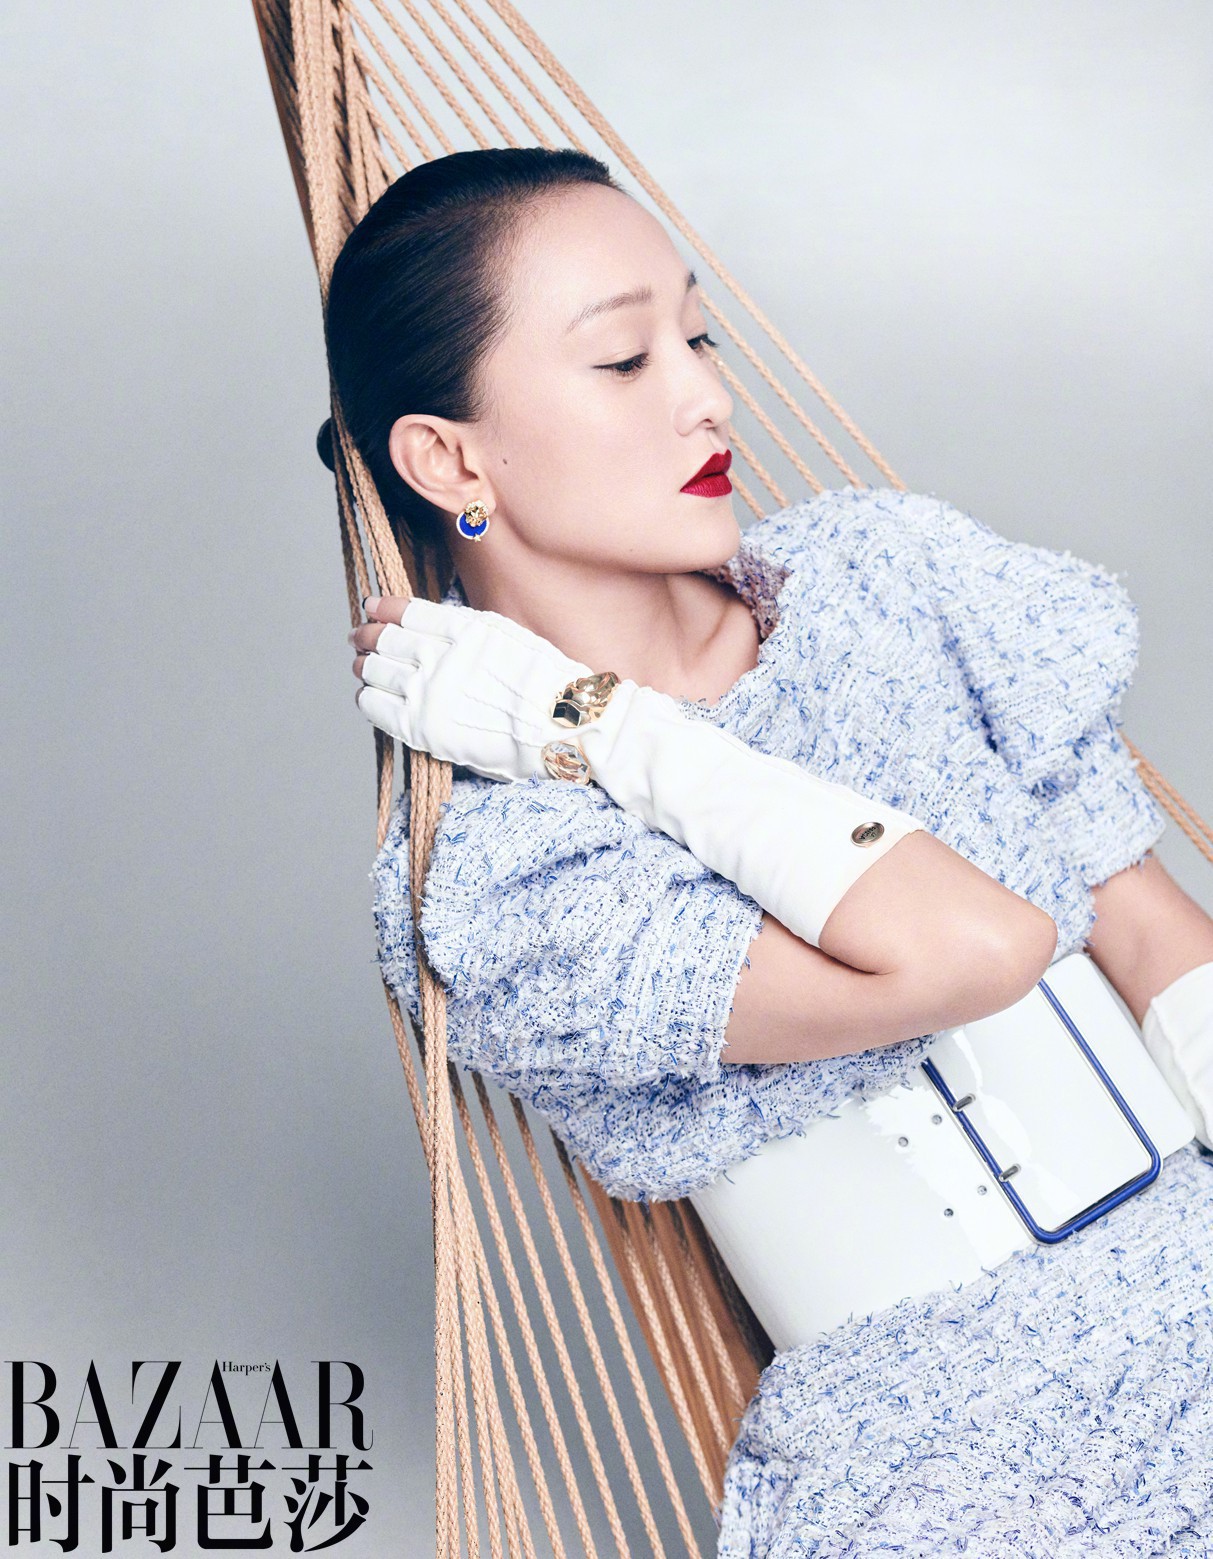 Cbiz chuyển động 360  VƯƠNG NHẤT BÁC CHÍNH THỨC TRỞ THÀNH ĐẠI SỨ HÌNH TƯỢNG  THƯƠNG HIỆU CHANEL Weibo của thương hiệu Chanel hôm nay đã đăng bài công  bố Vương